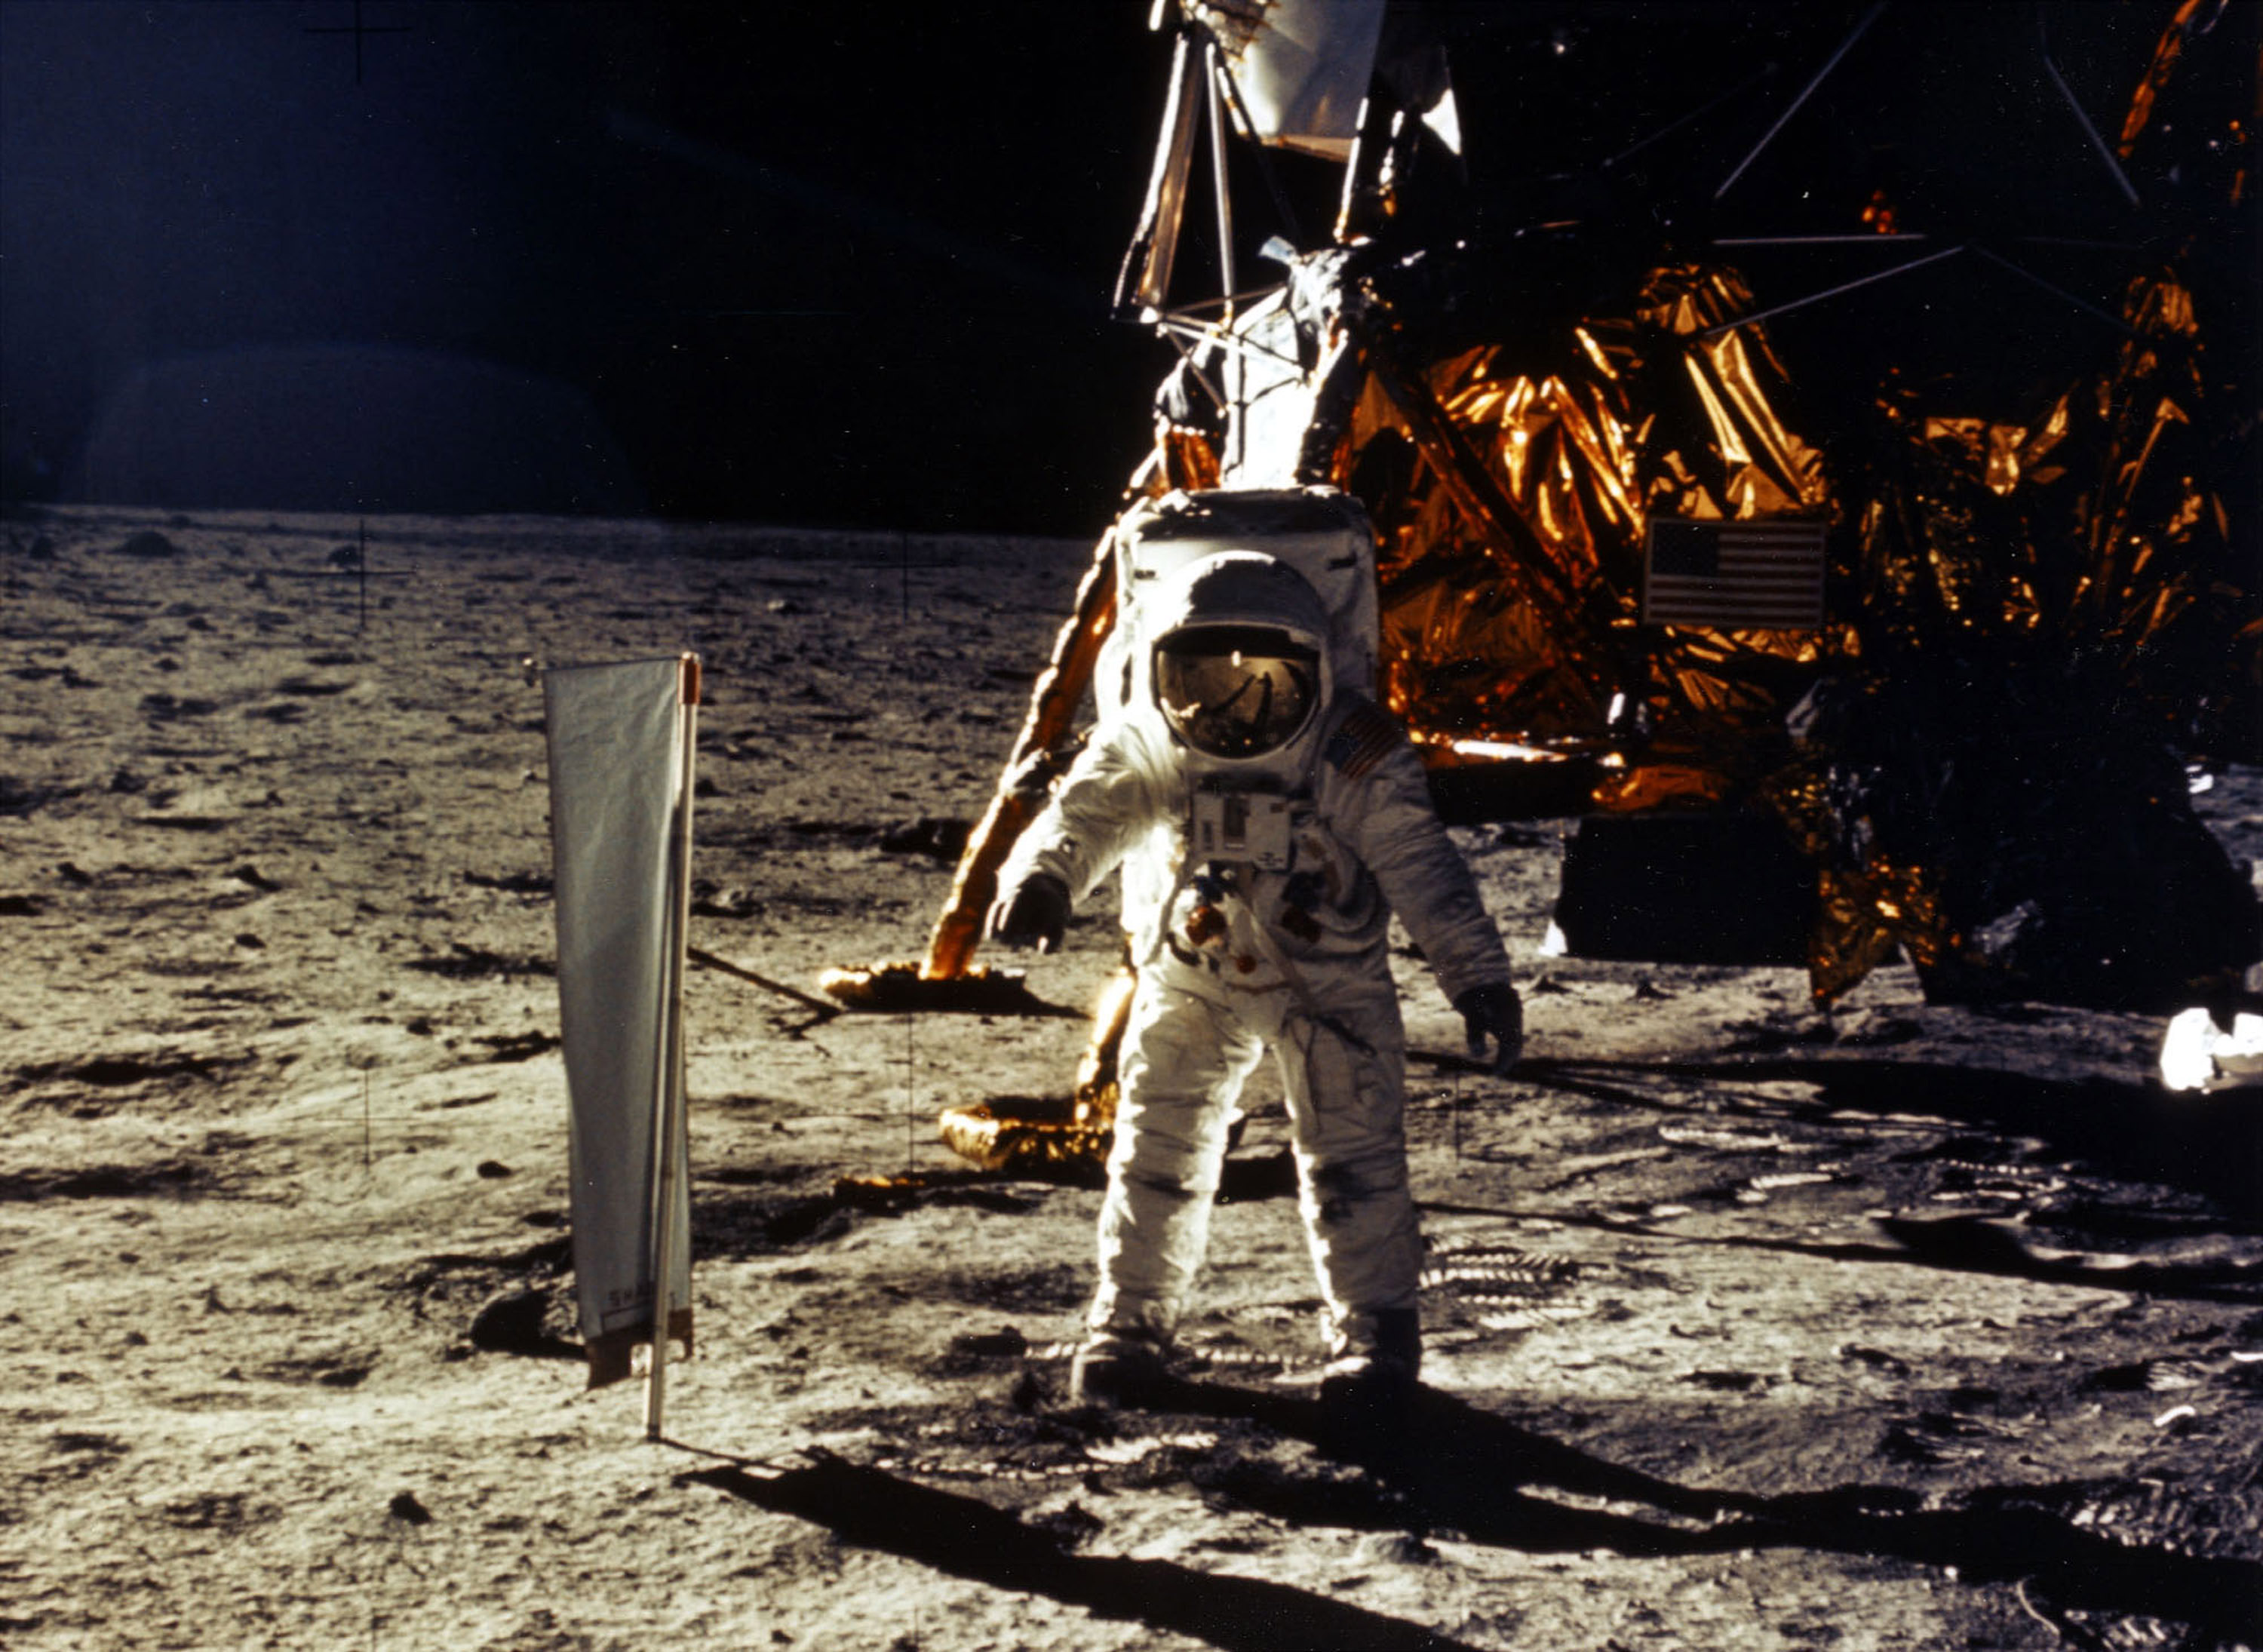 Armstrong on the moon. Apollo 11 1969.